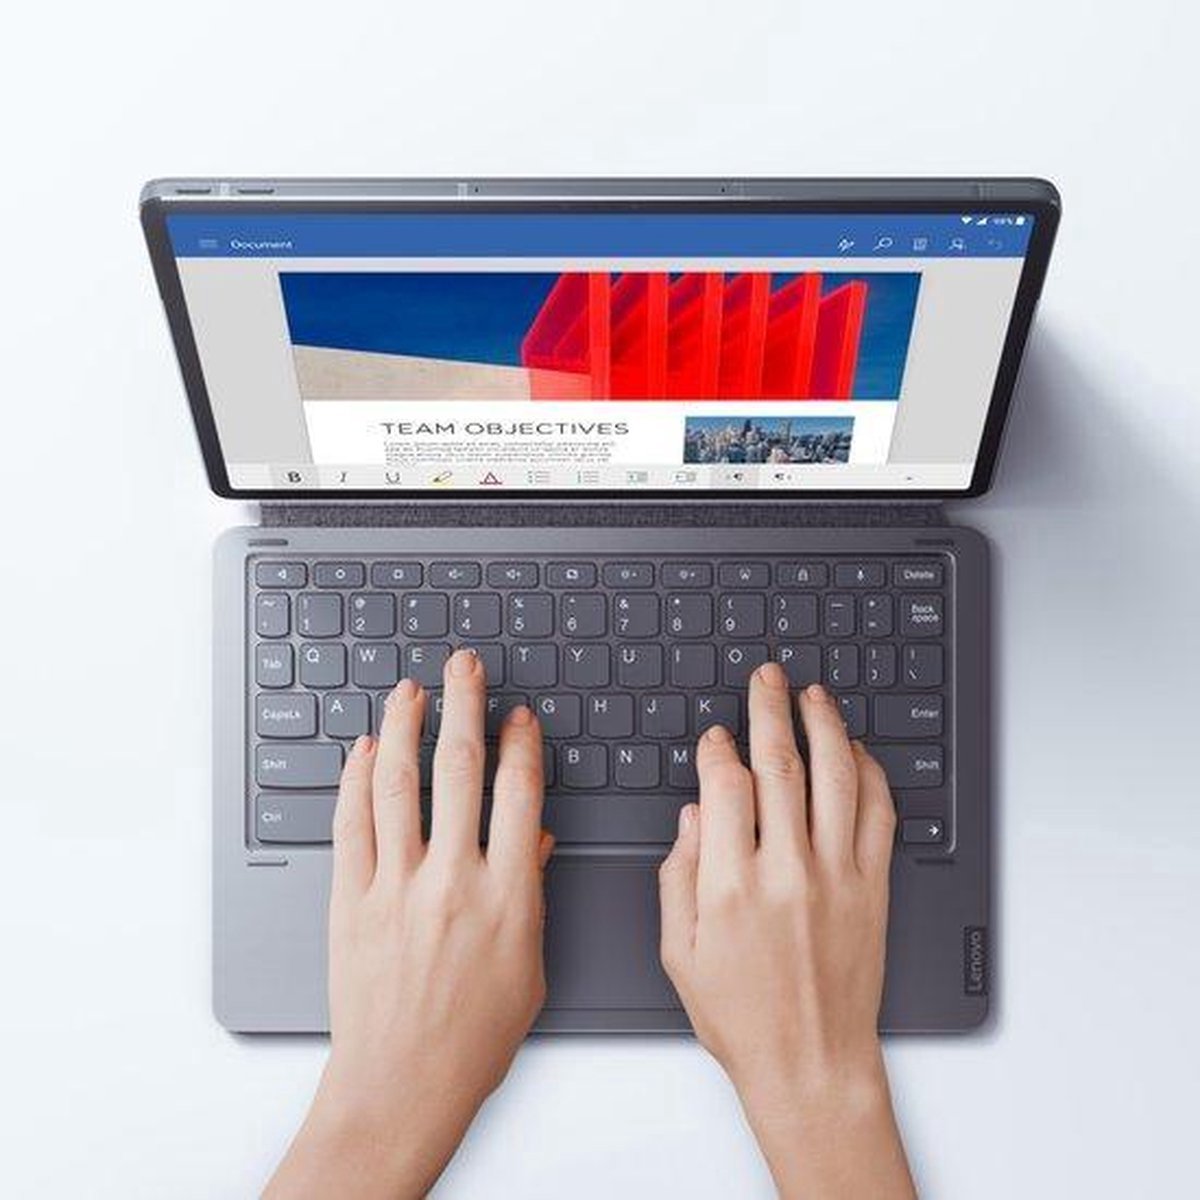 Ensemble clavier Lenovo pour Tab P11 - Français